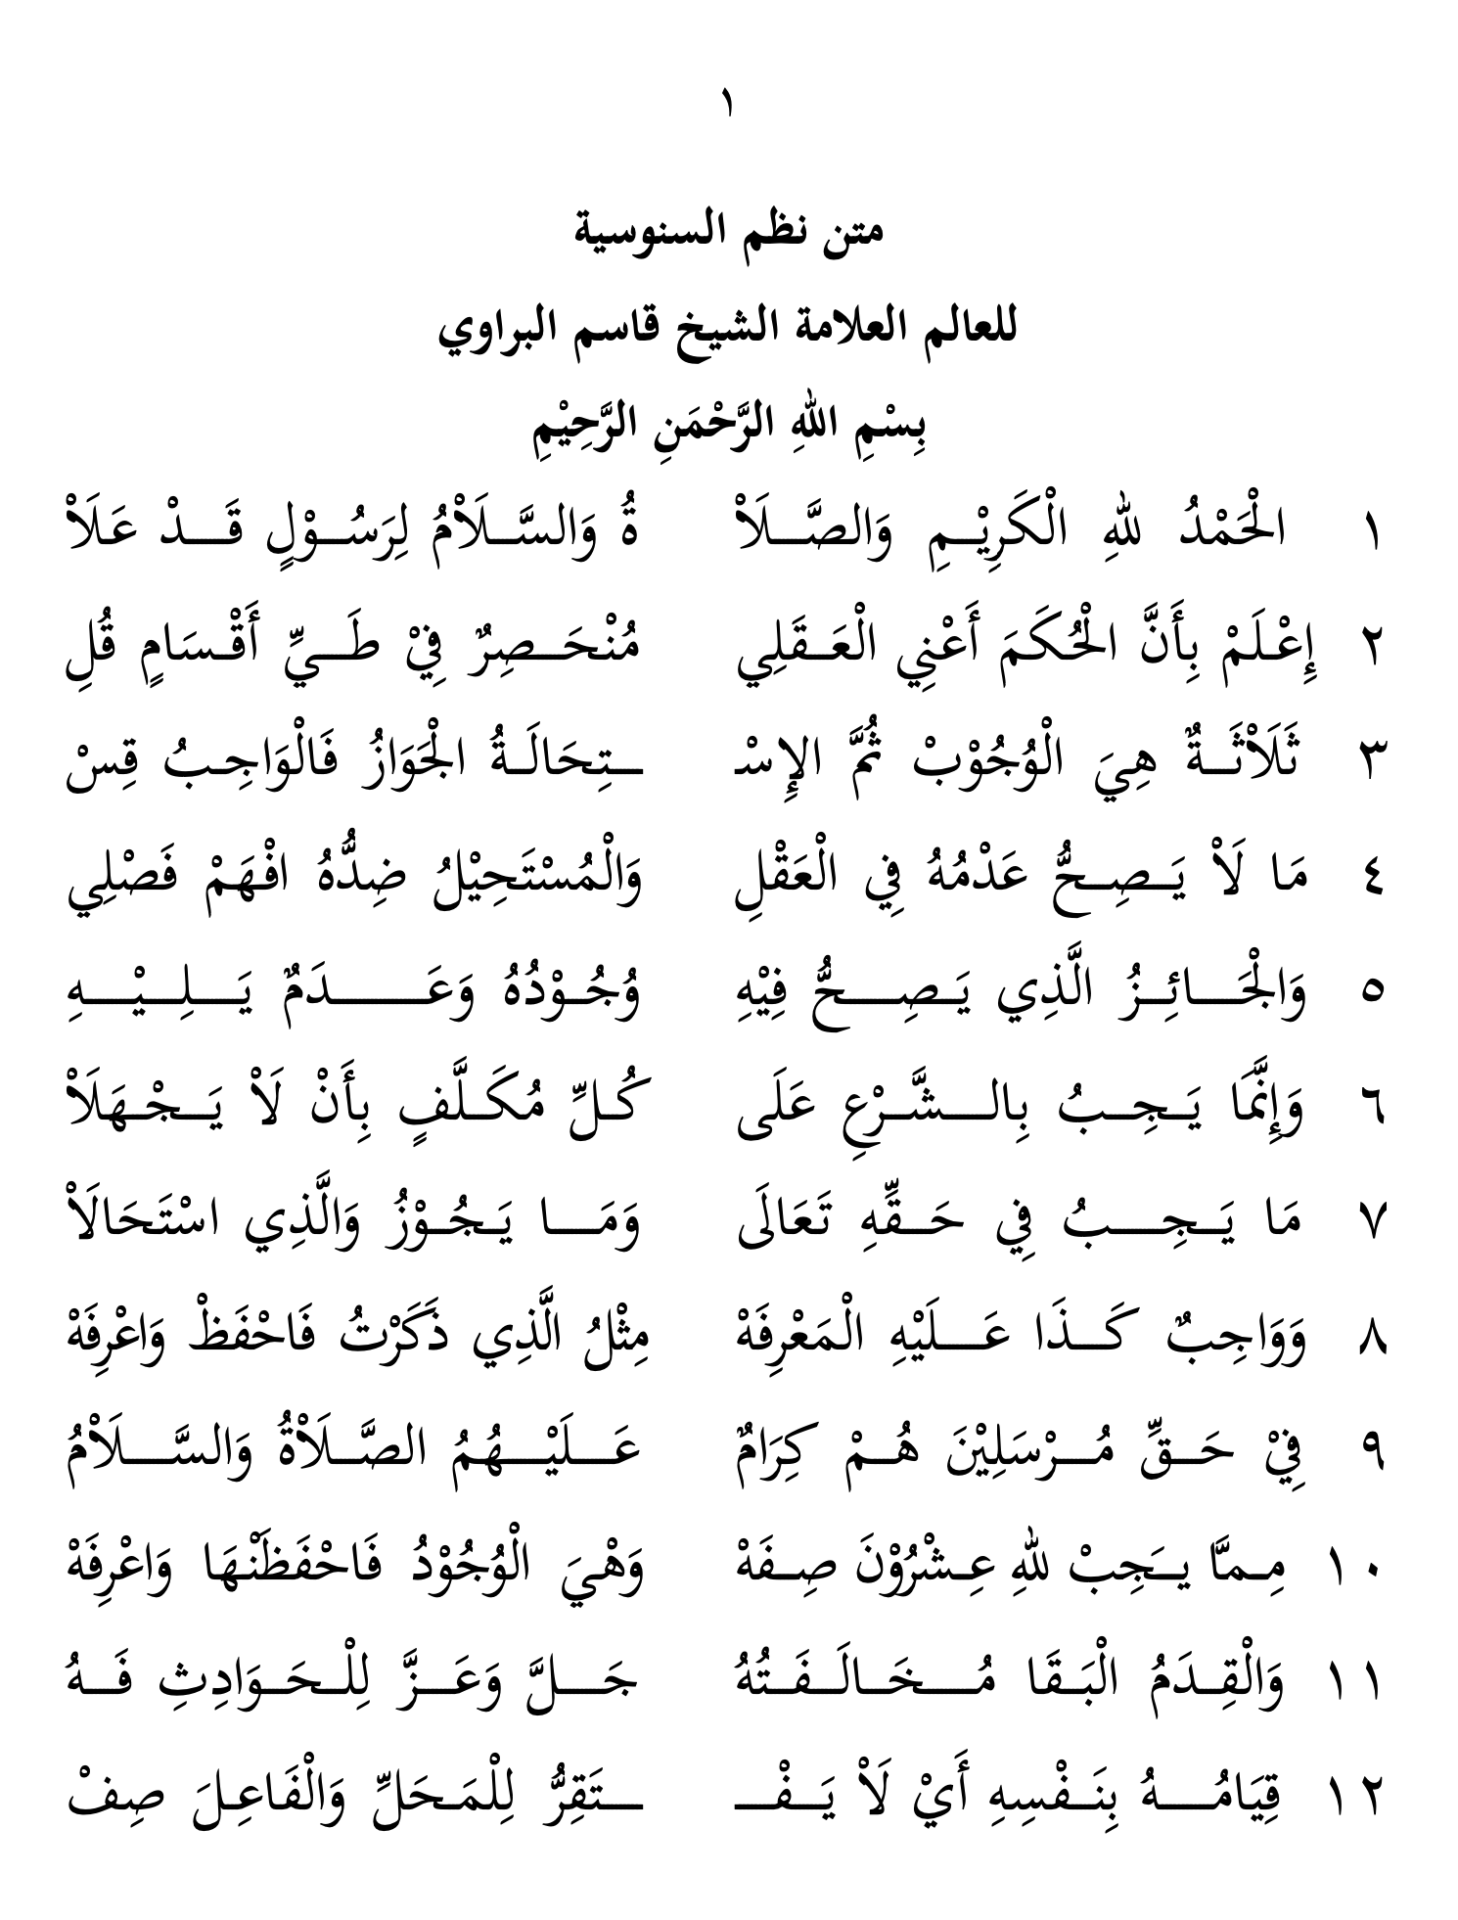 نظم السنوسية الصغرى للشيخ قاسم البراوي - The Discipline Tariqa of Sheikh Qassem Al-Barawi